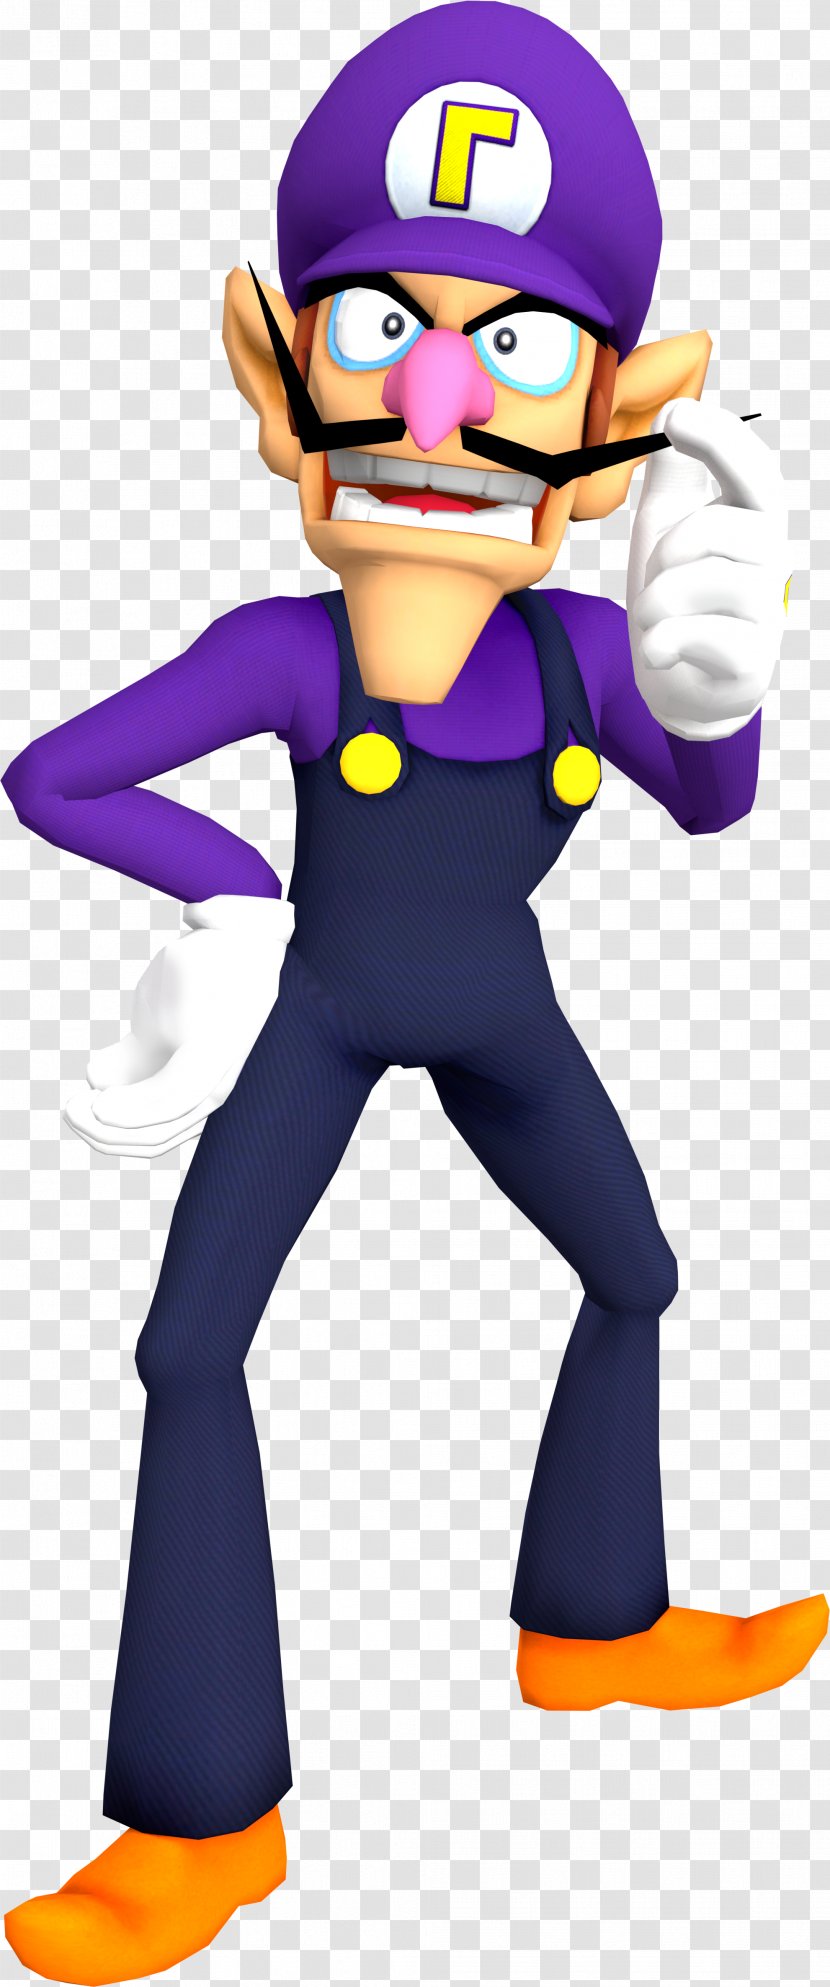 Luigi Illustration Mario Series Clip Art Mascot - Action Figure - Aura Symbol Transparent PNG